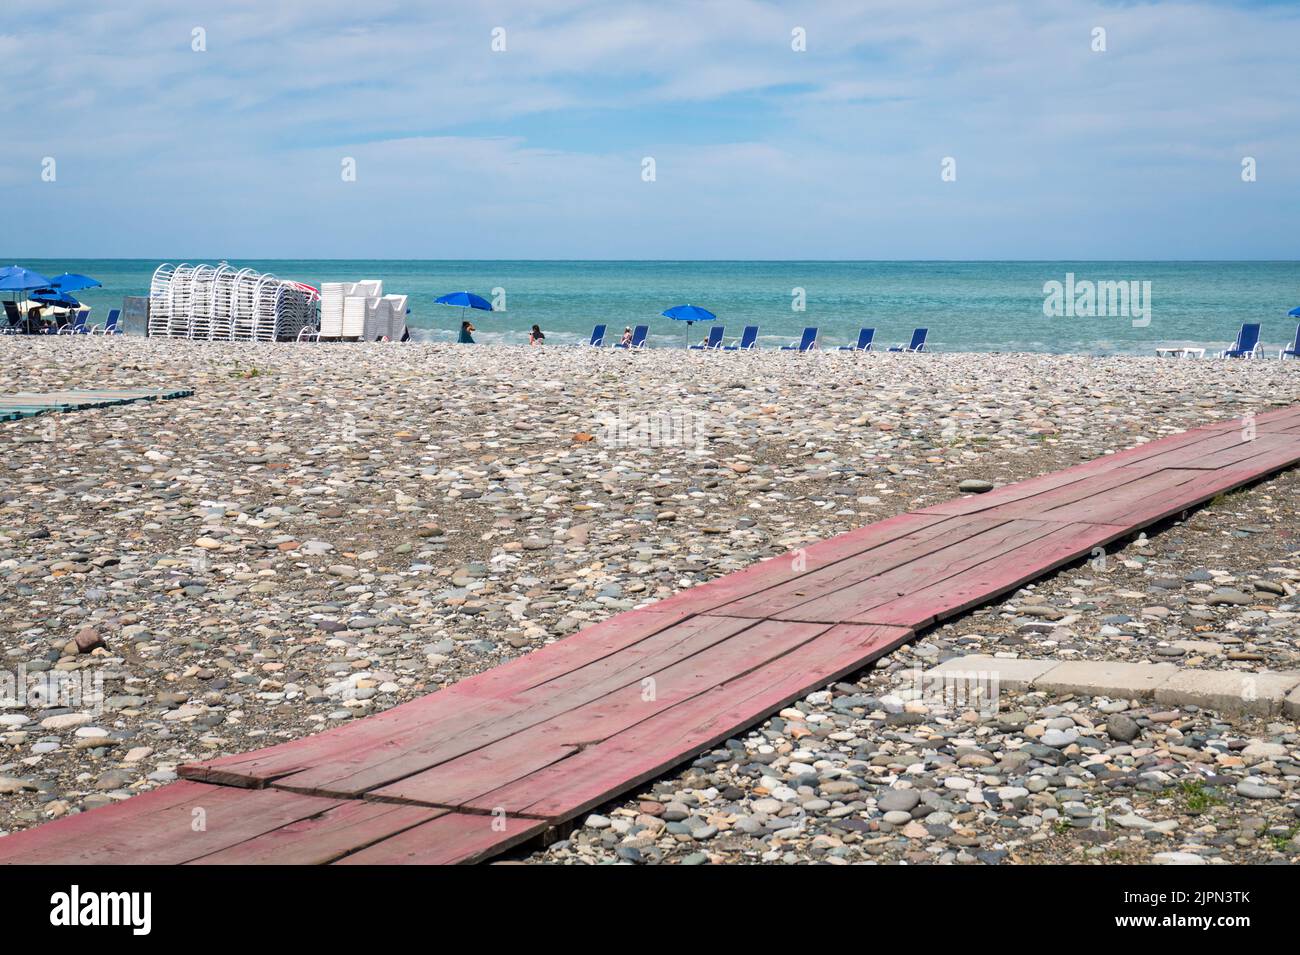 Plage de Batumi, Géorgie. Un chemin en bois sur une plage de galets. Lumineux été jour ensoleillé, eau bleue. Banque D'Images